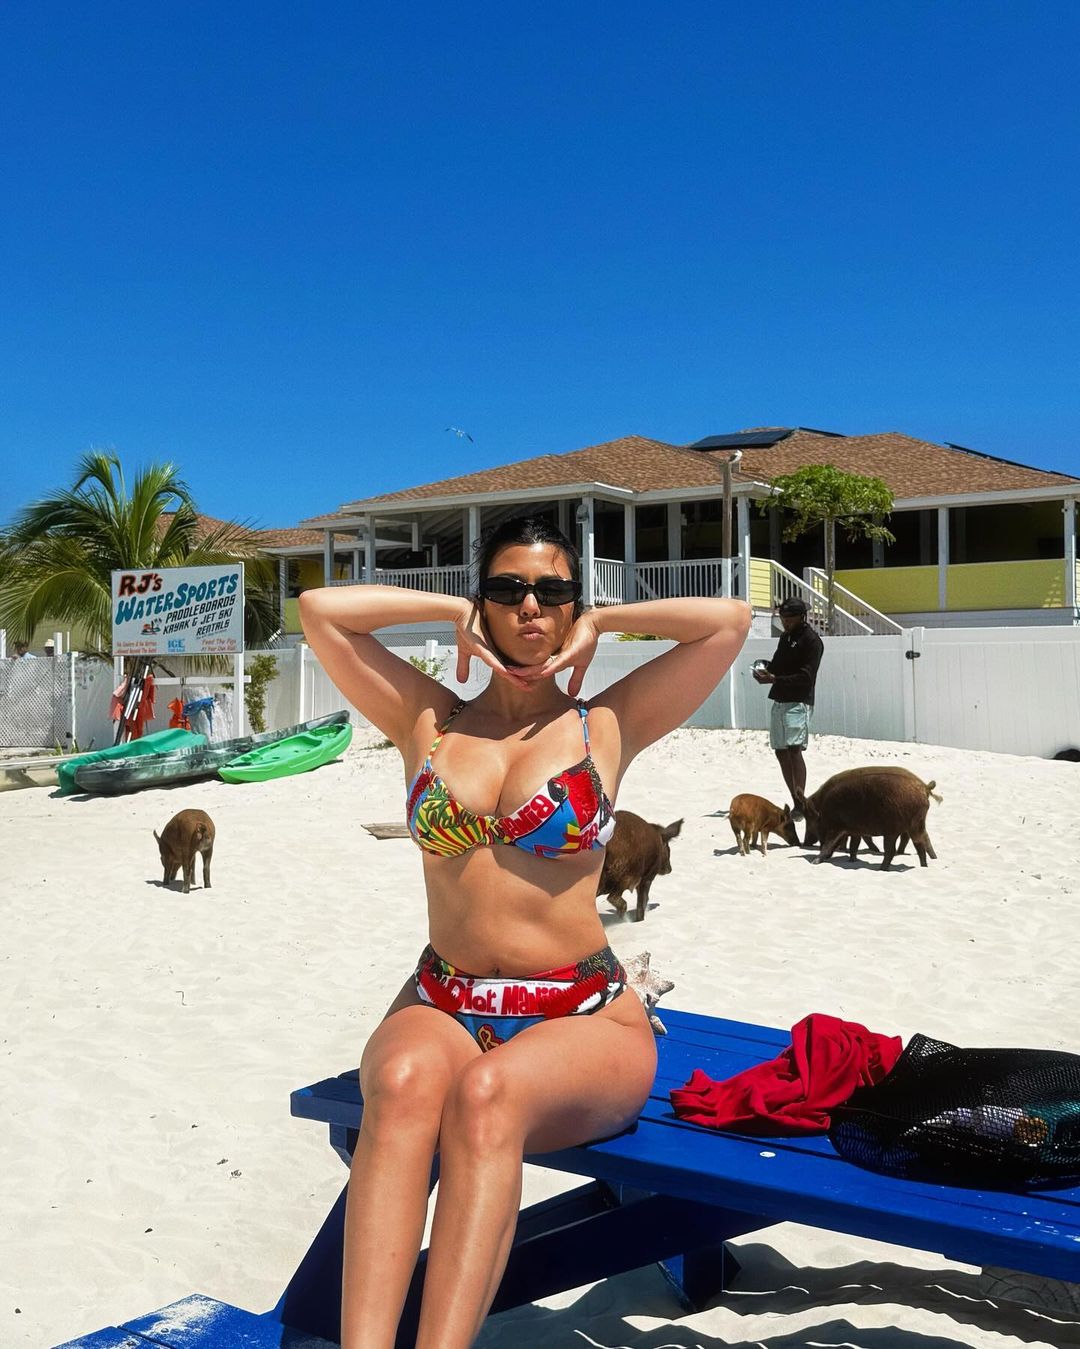 Kourtney Kardashian Posts New Bikini Photo of Post-Baby Body